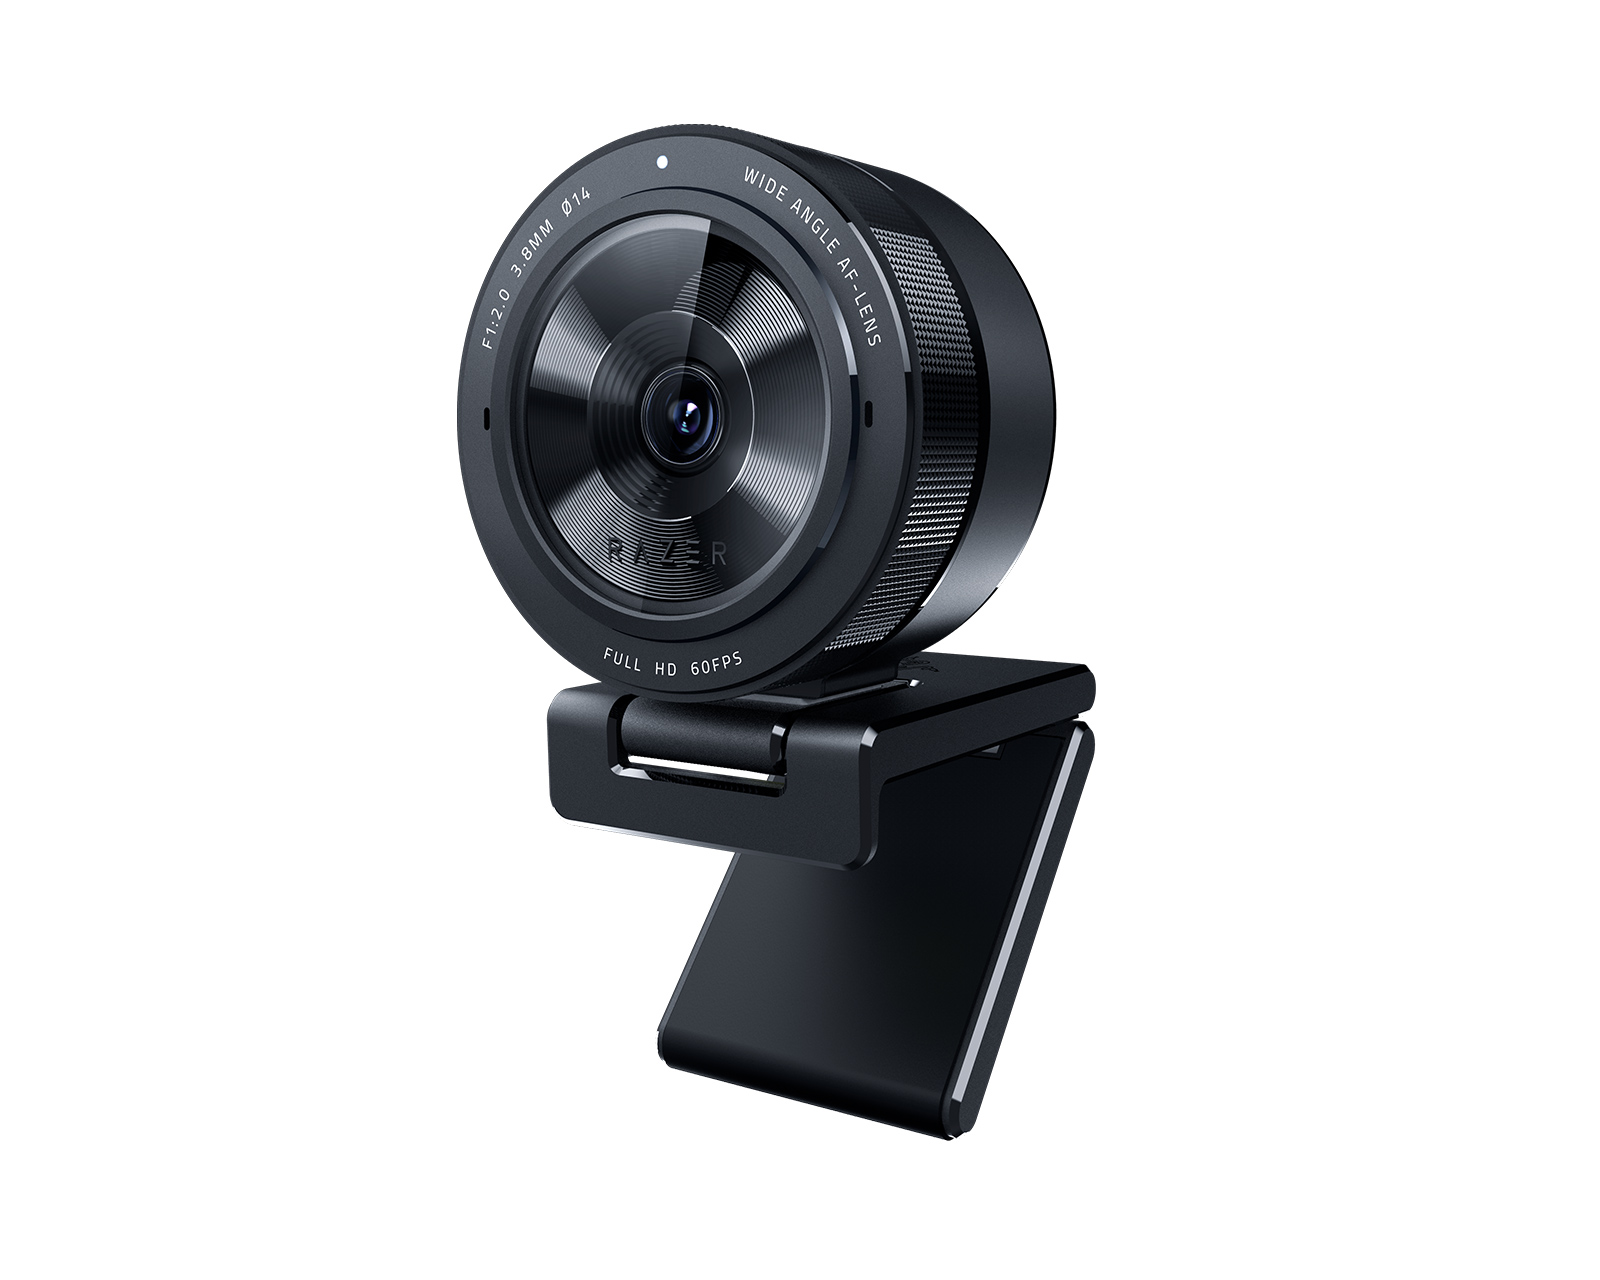 Webbkameran BRIO från Logitech med 4K Ultra HD-video och HDR